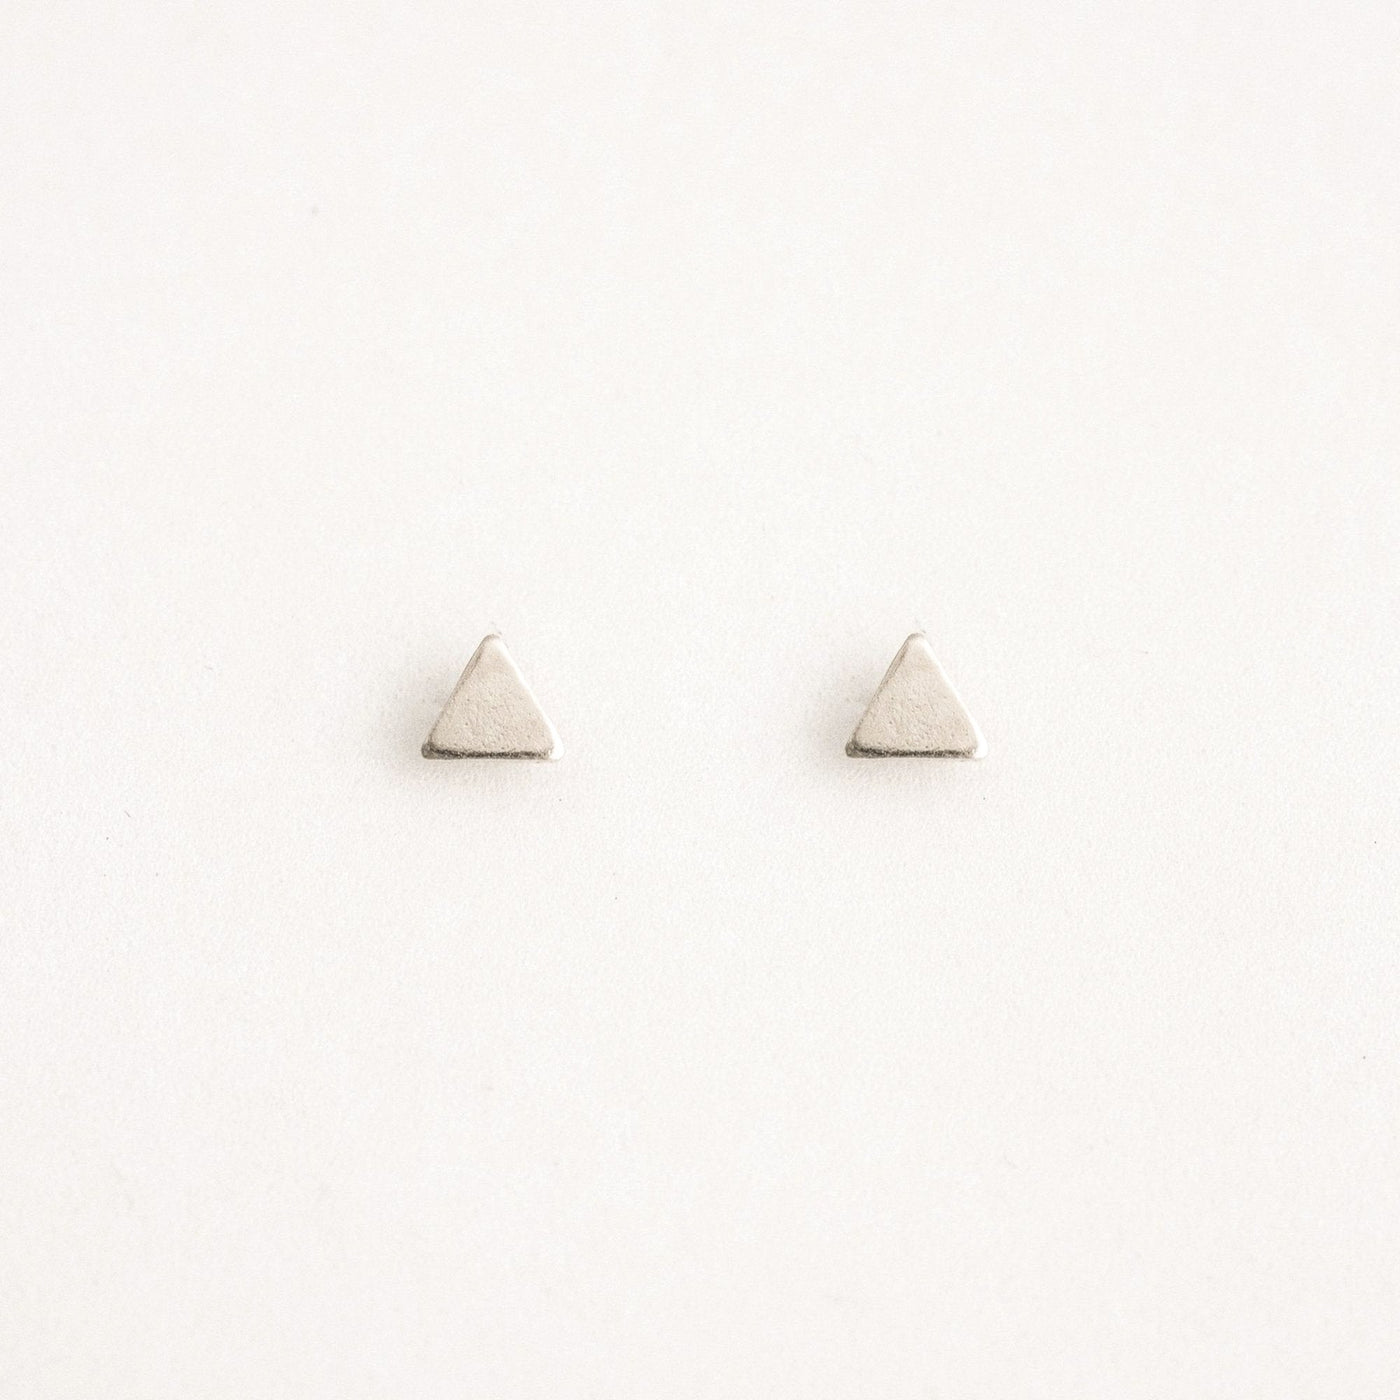 Triangle Stud Earrings by Simple & Dainty Jewelry